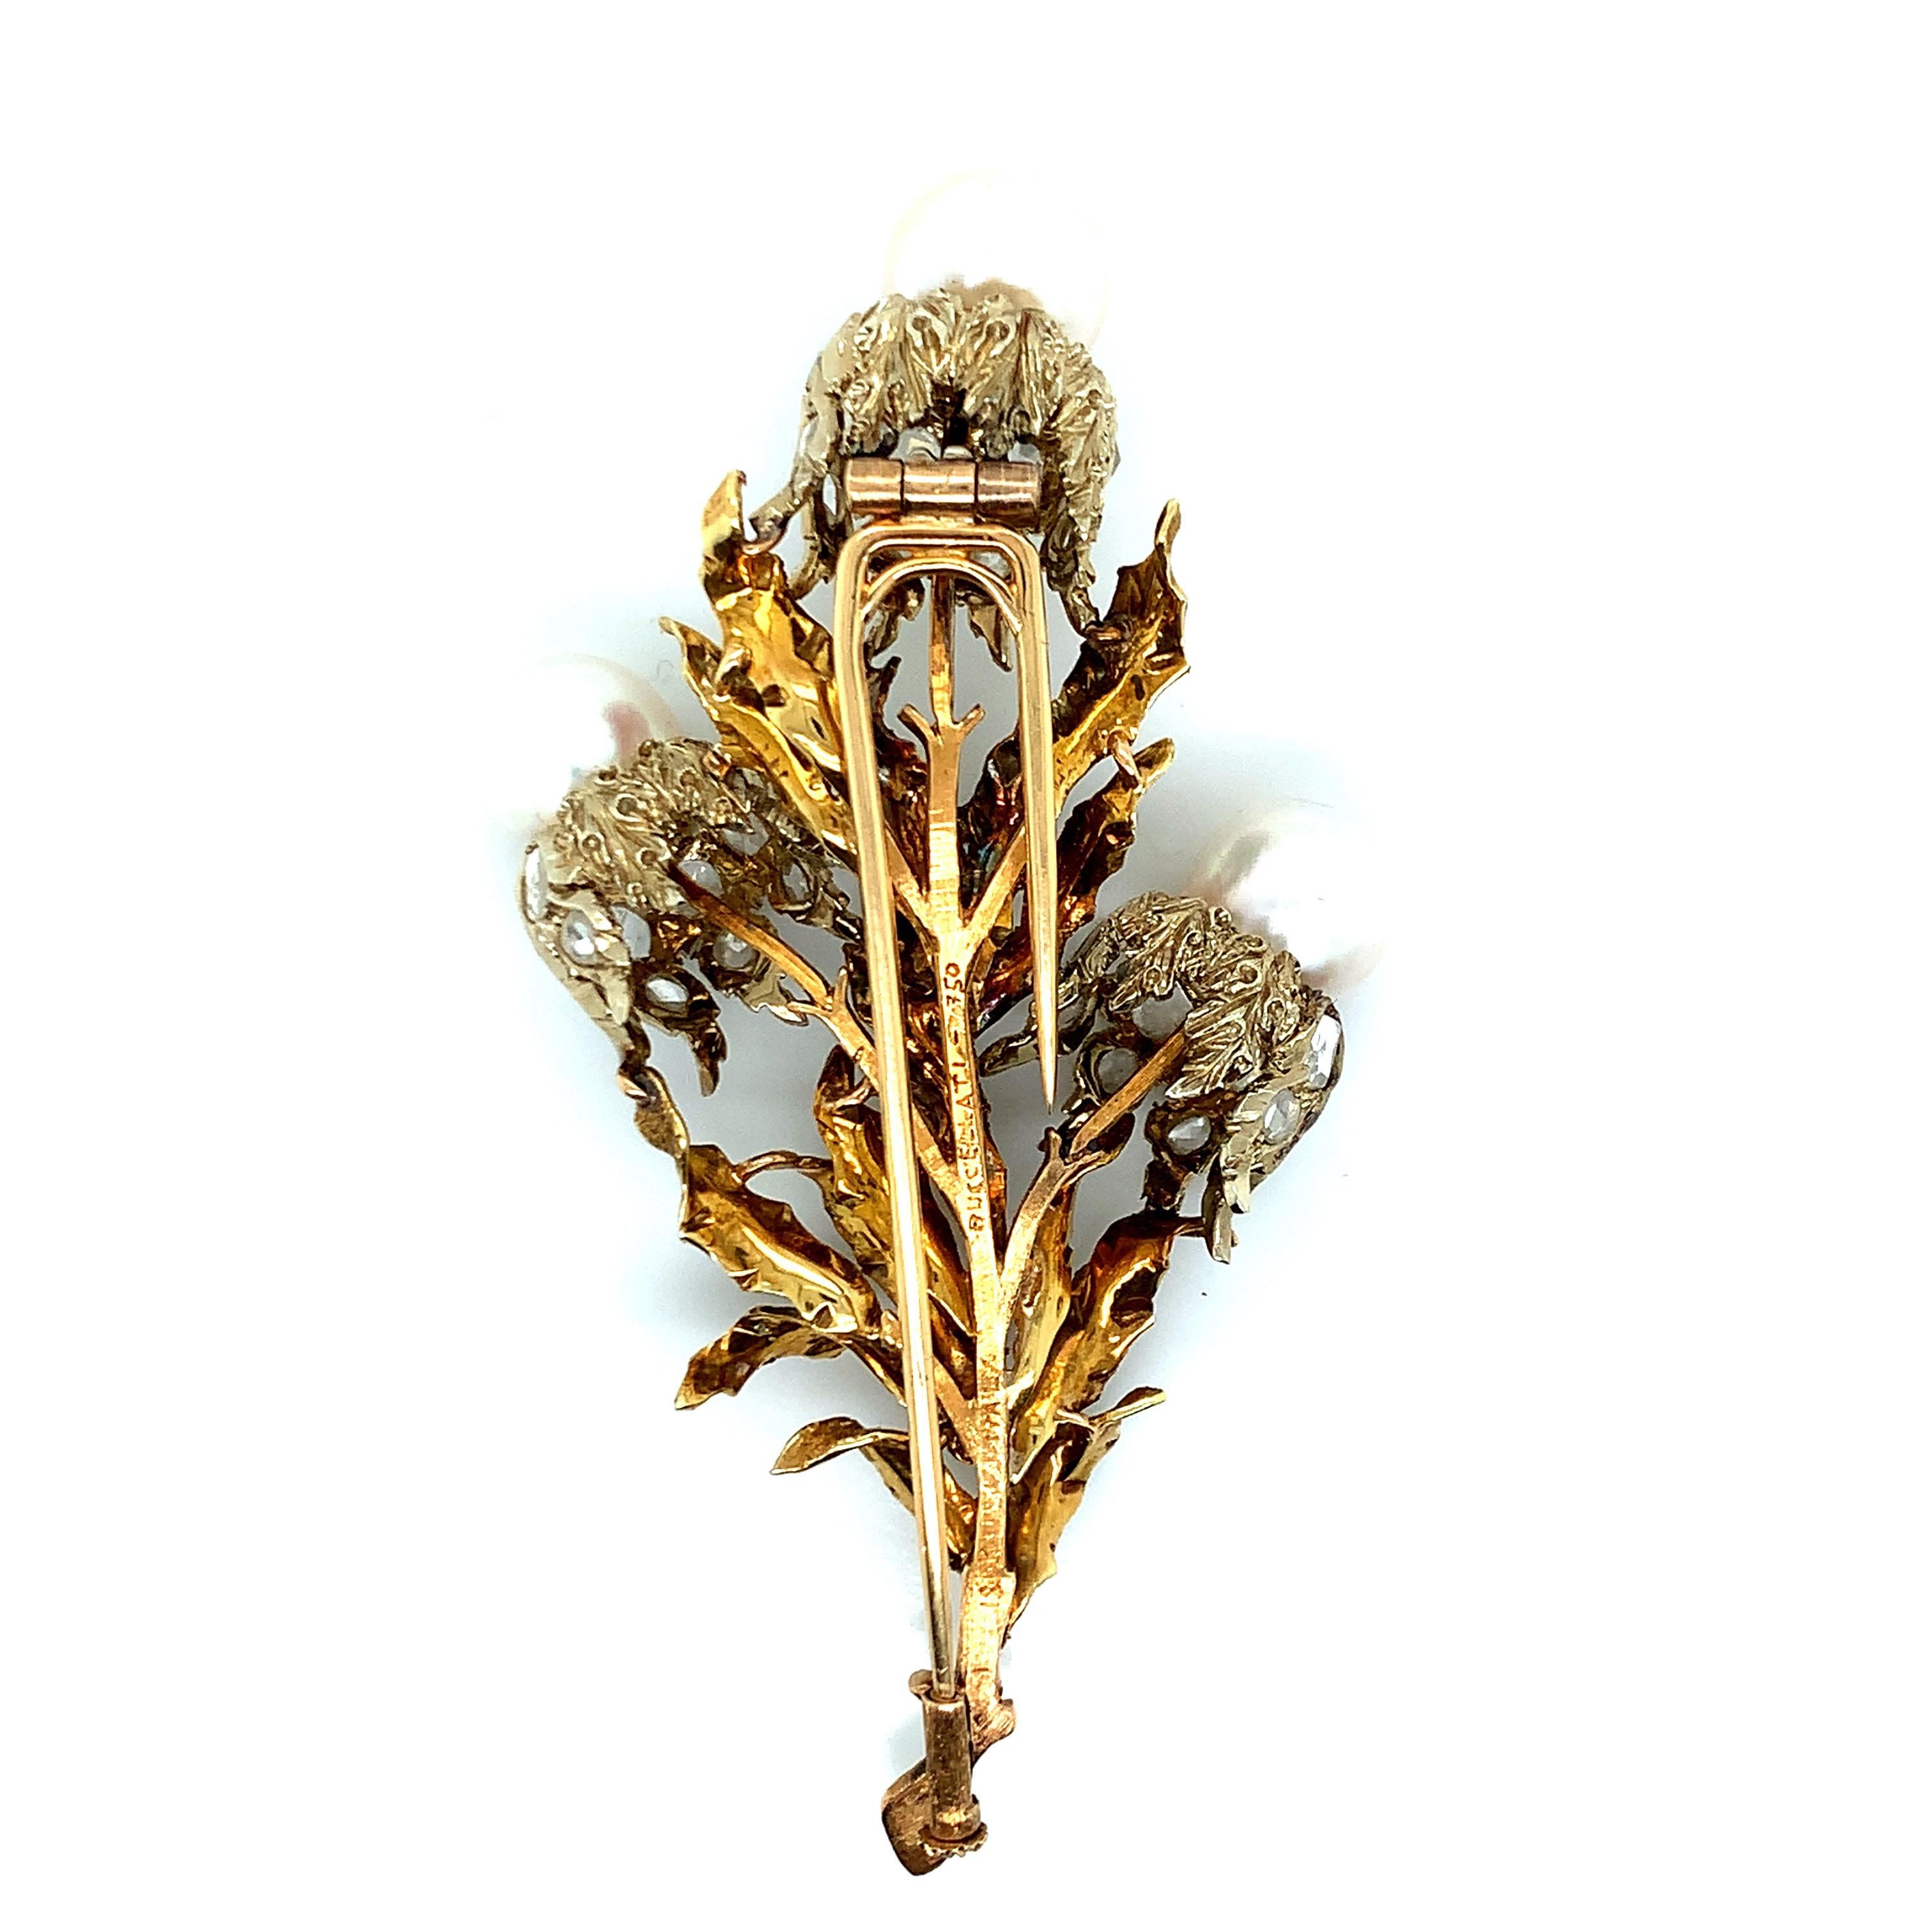 Brosche von Buccellati aus 18 Karat Gold, bestehend aus drei Zuchtperlen mit einer Größe von jeweils ca. 9,2 bis 10,2 mm und Diamanten im Rosenschliff mit einem Gewicht von ca. 2,46 Karat. Ein wunderschönes handgefertigtes Schmuckstück. Gezeichnet: